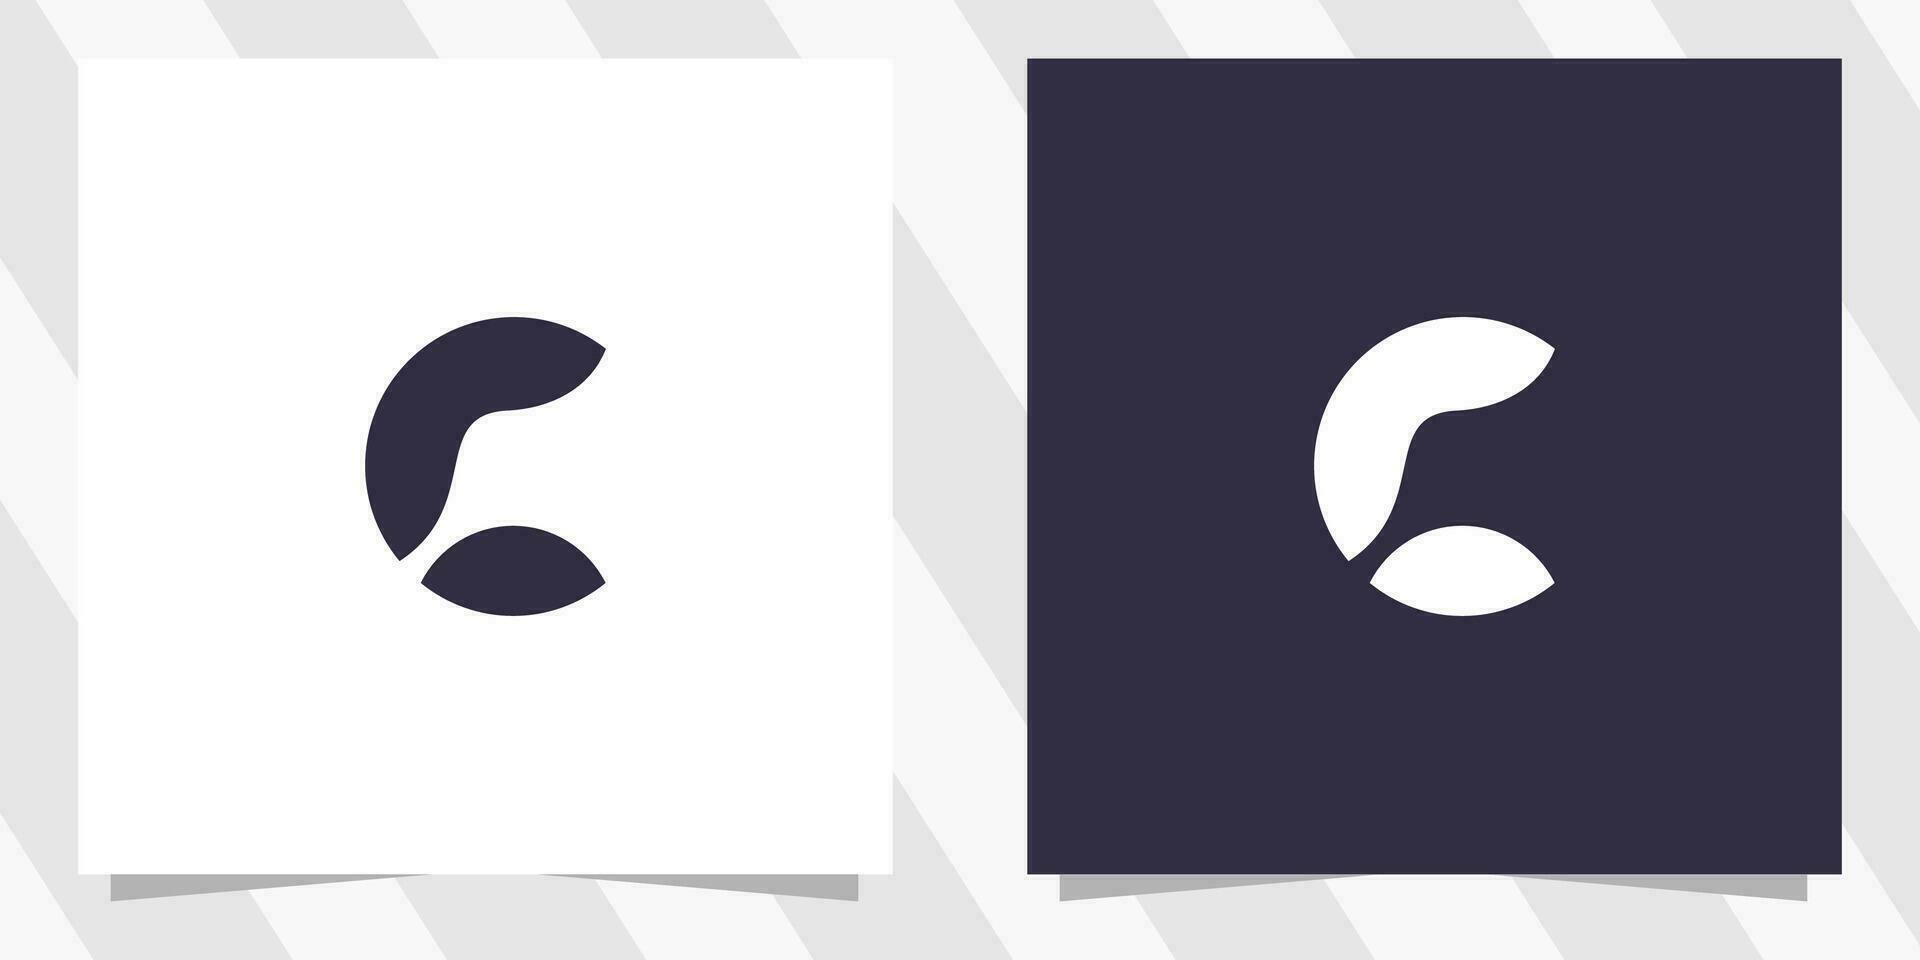 letter c logo design vector